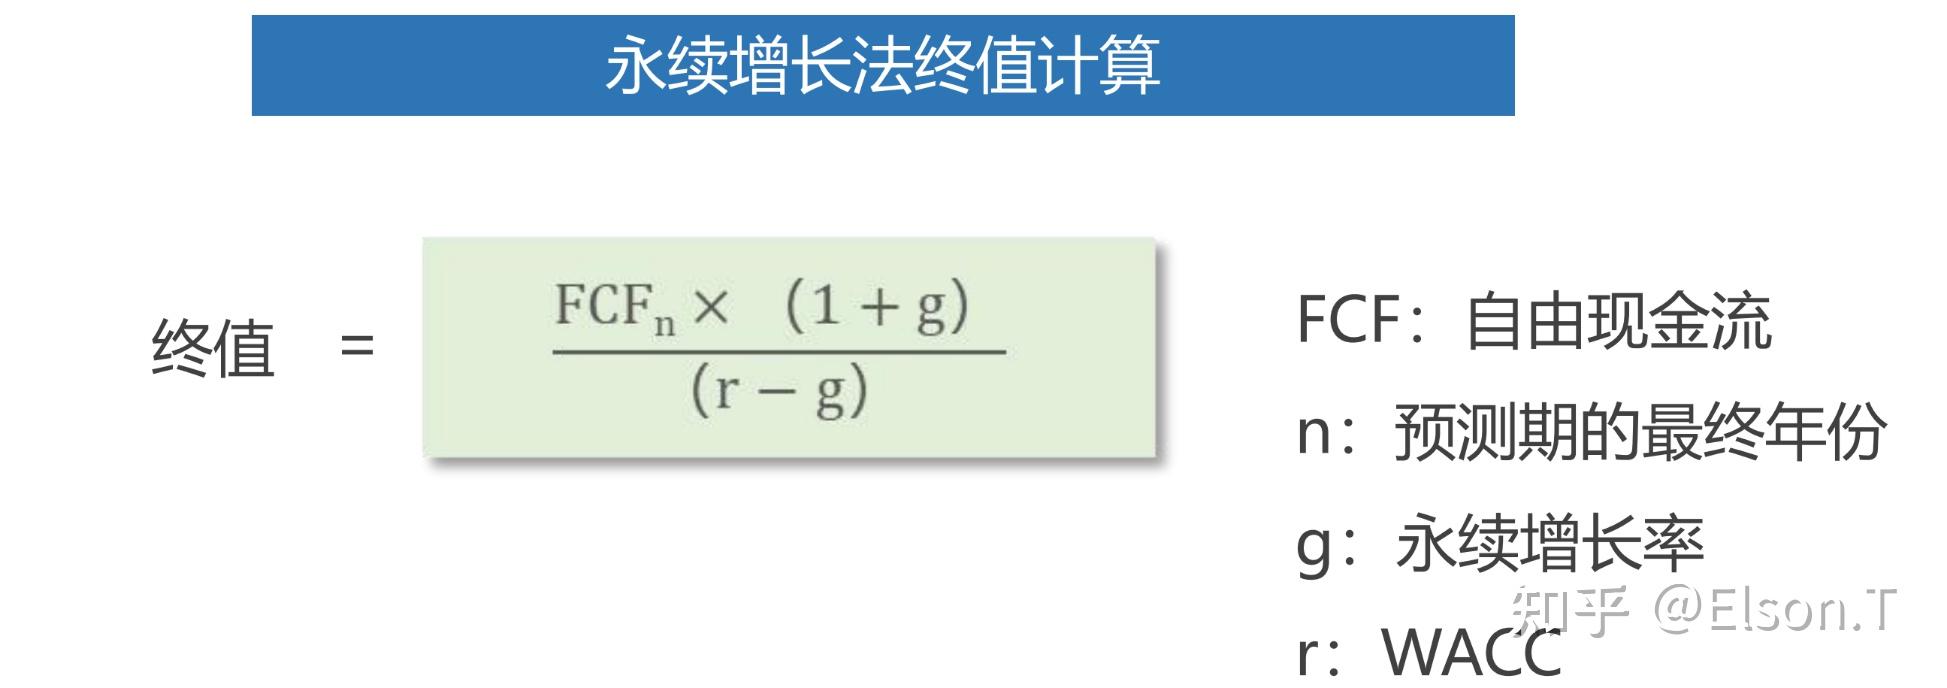 终值计算两种方法:(1)永续增长法;(2)ebitda退出乘数法61 设置终值